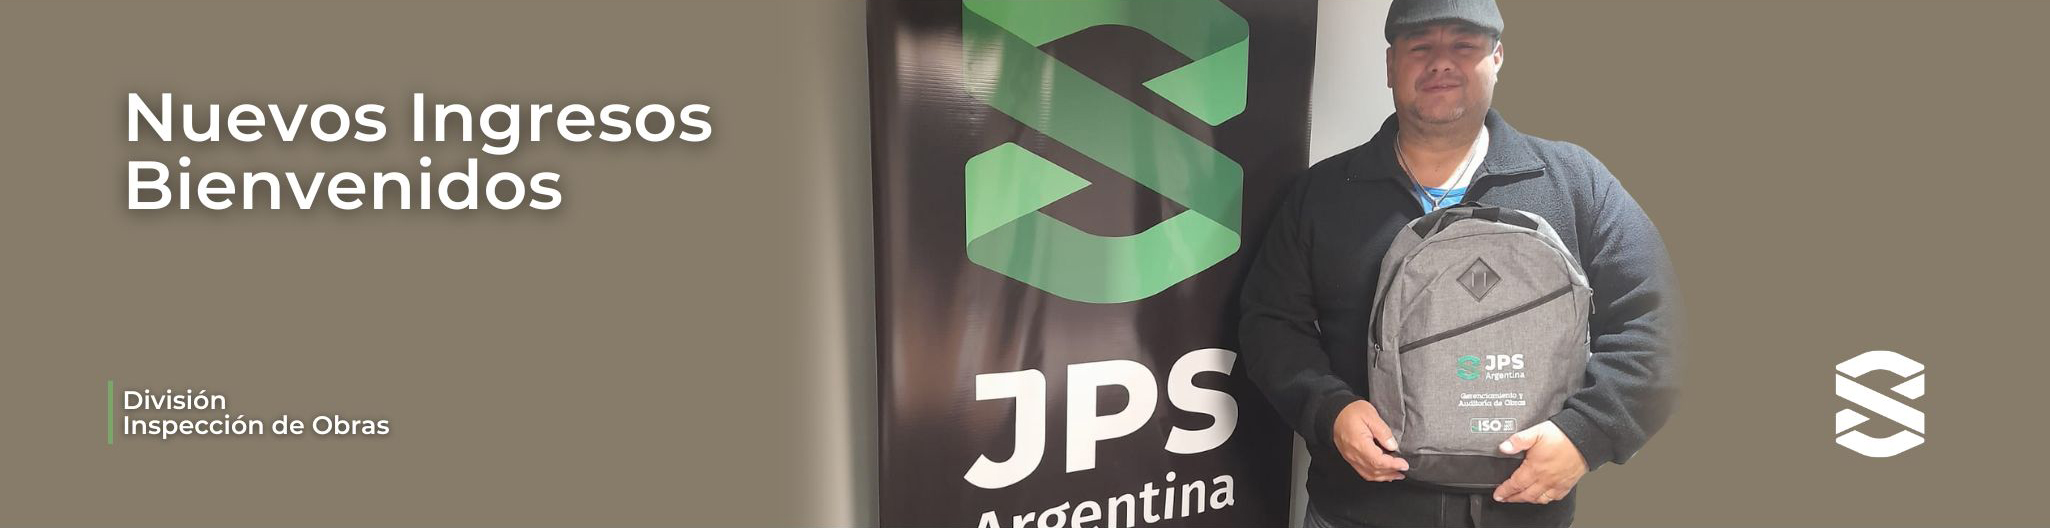 ¡Bienvenidos JPS Argentina! AGOSTO